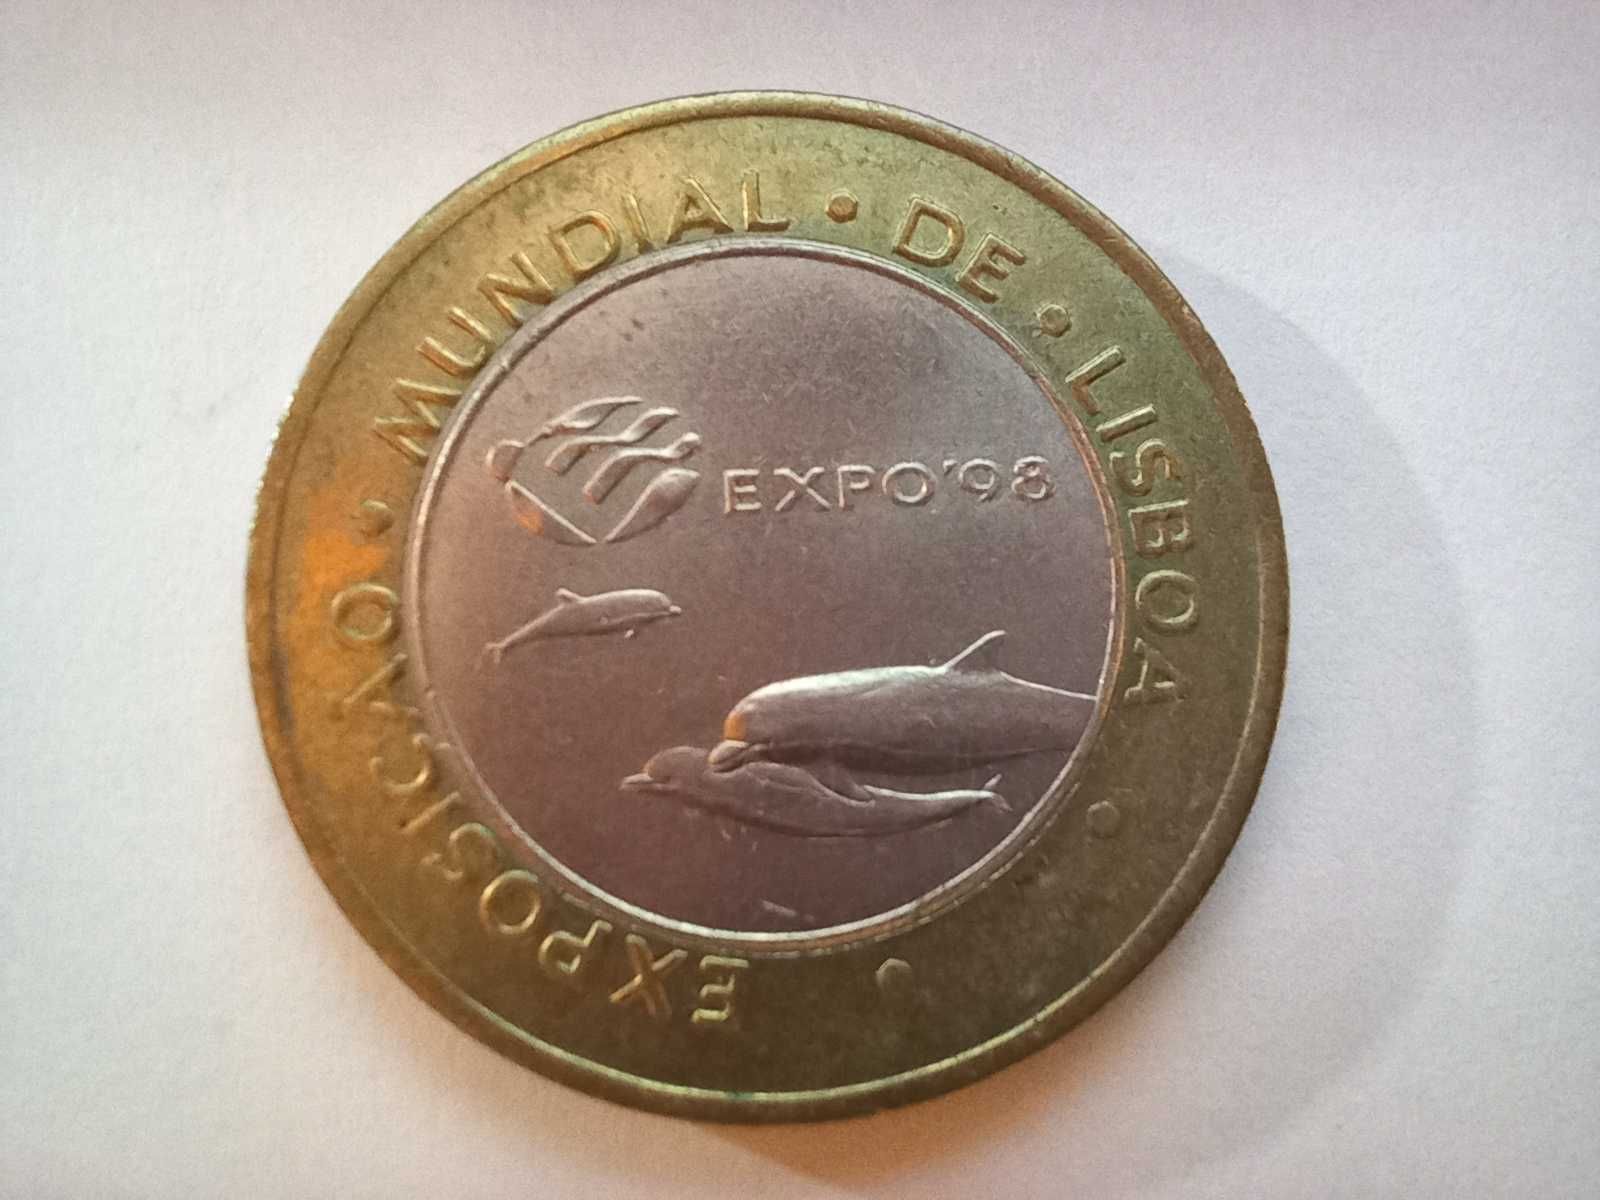 Portugal 200 escudos, 1997 - Exposição Mundial de Lisboa - Expo'98